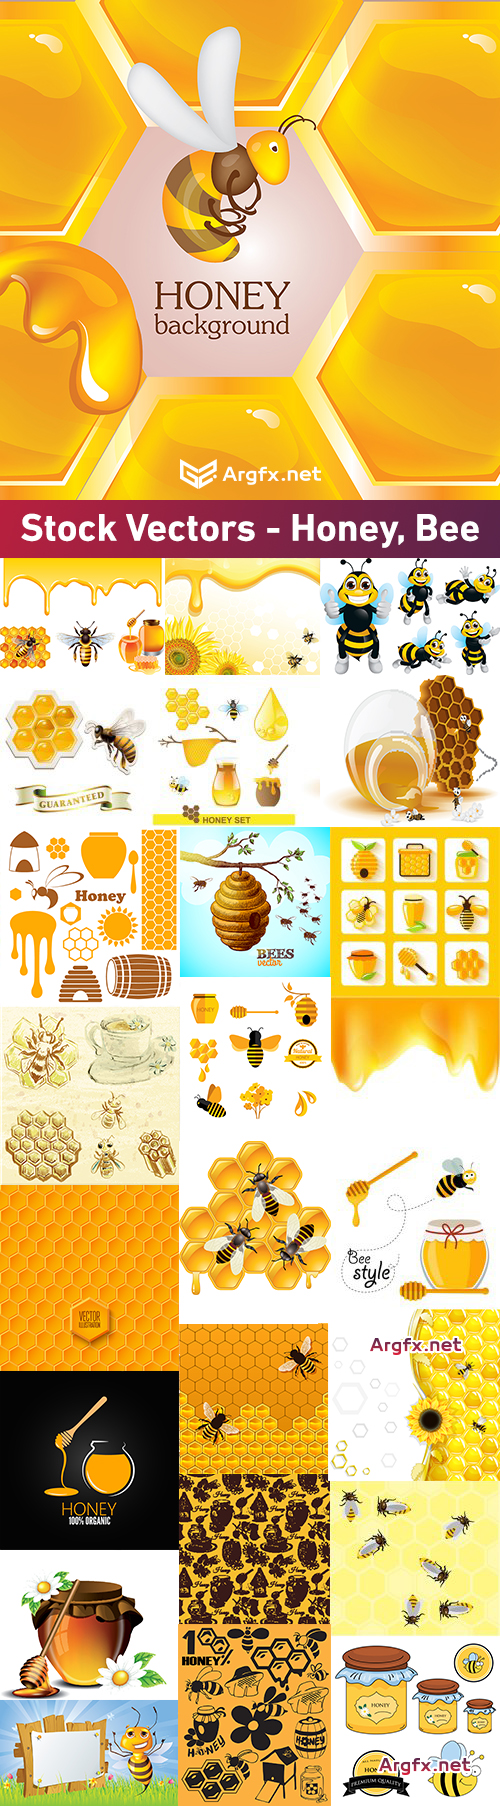 Stock Vectors - Honey, Bee, 25xEPS